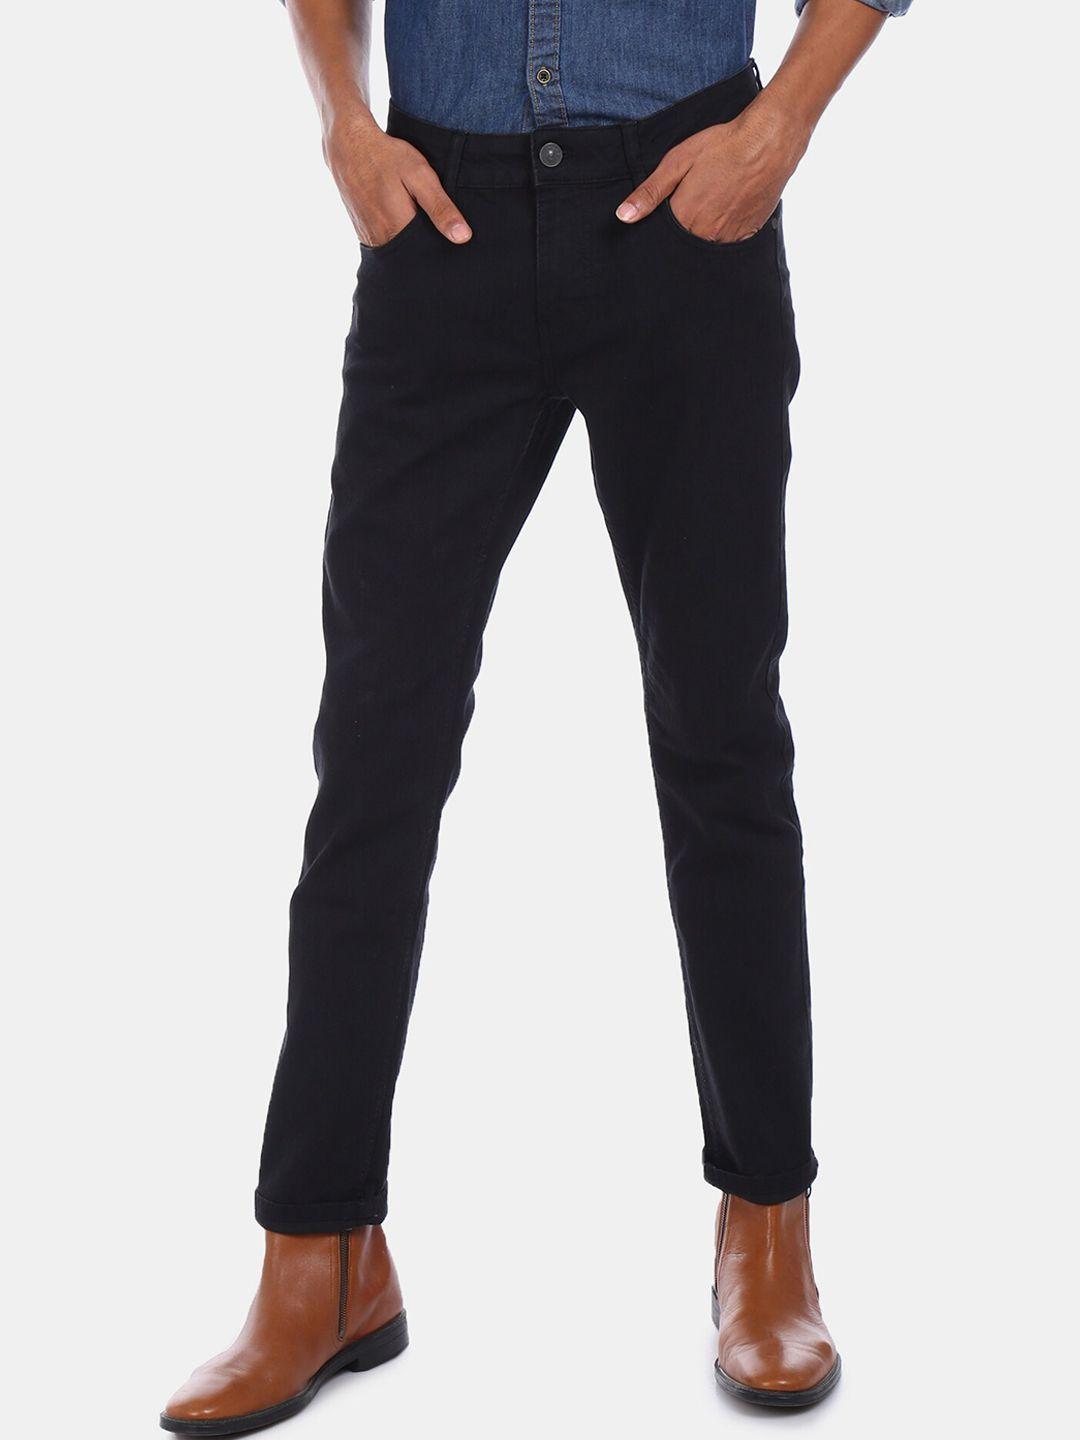 colt-men-black-regular-fit-jeans